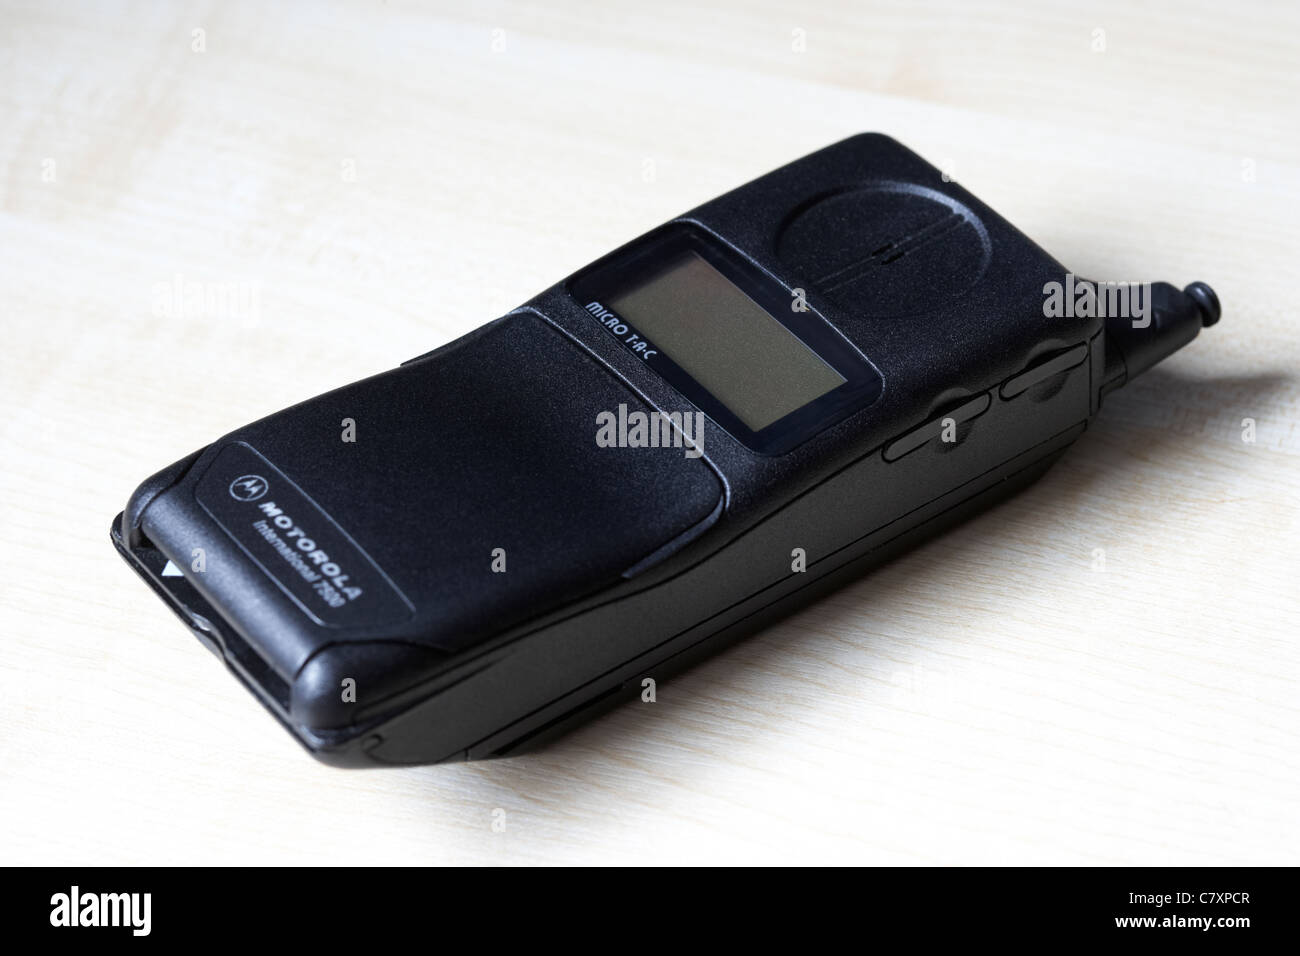 Motorola micro tac international 7500 900 gsm cellulare dalla metà degli anni novanta Foto Stock